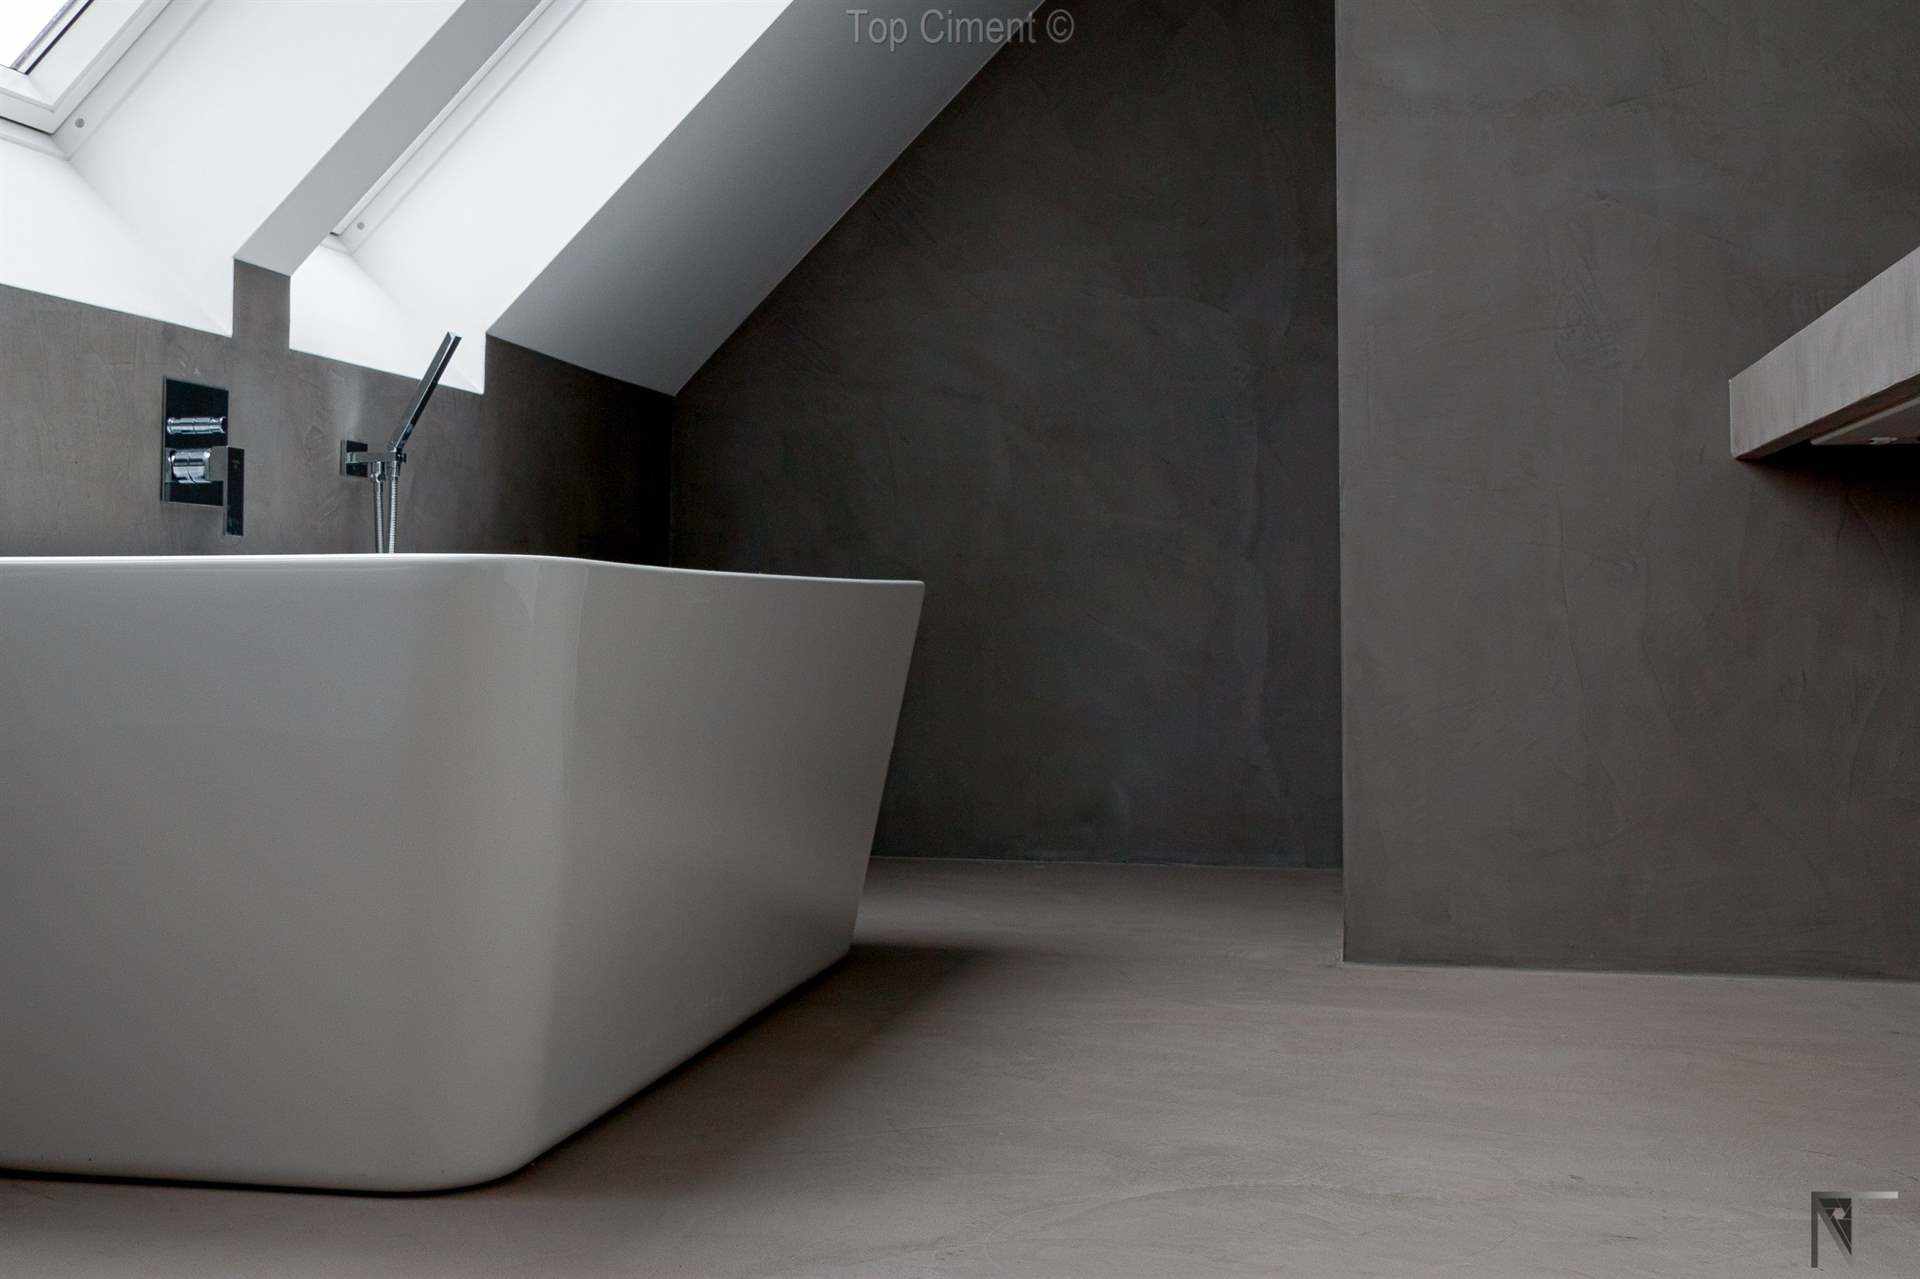 Fotos de baño de azulejos reformado con microcemento